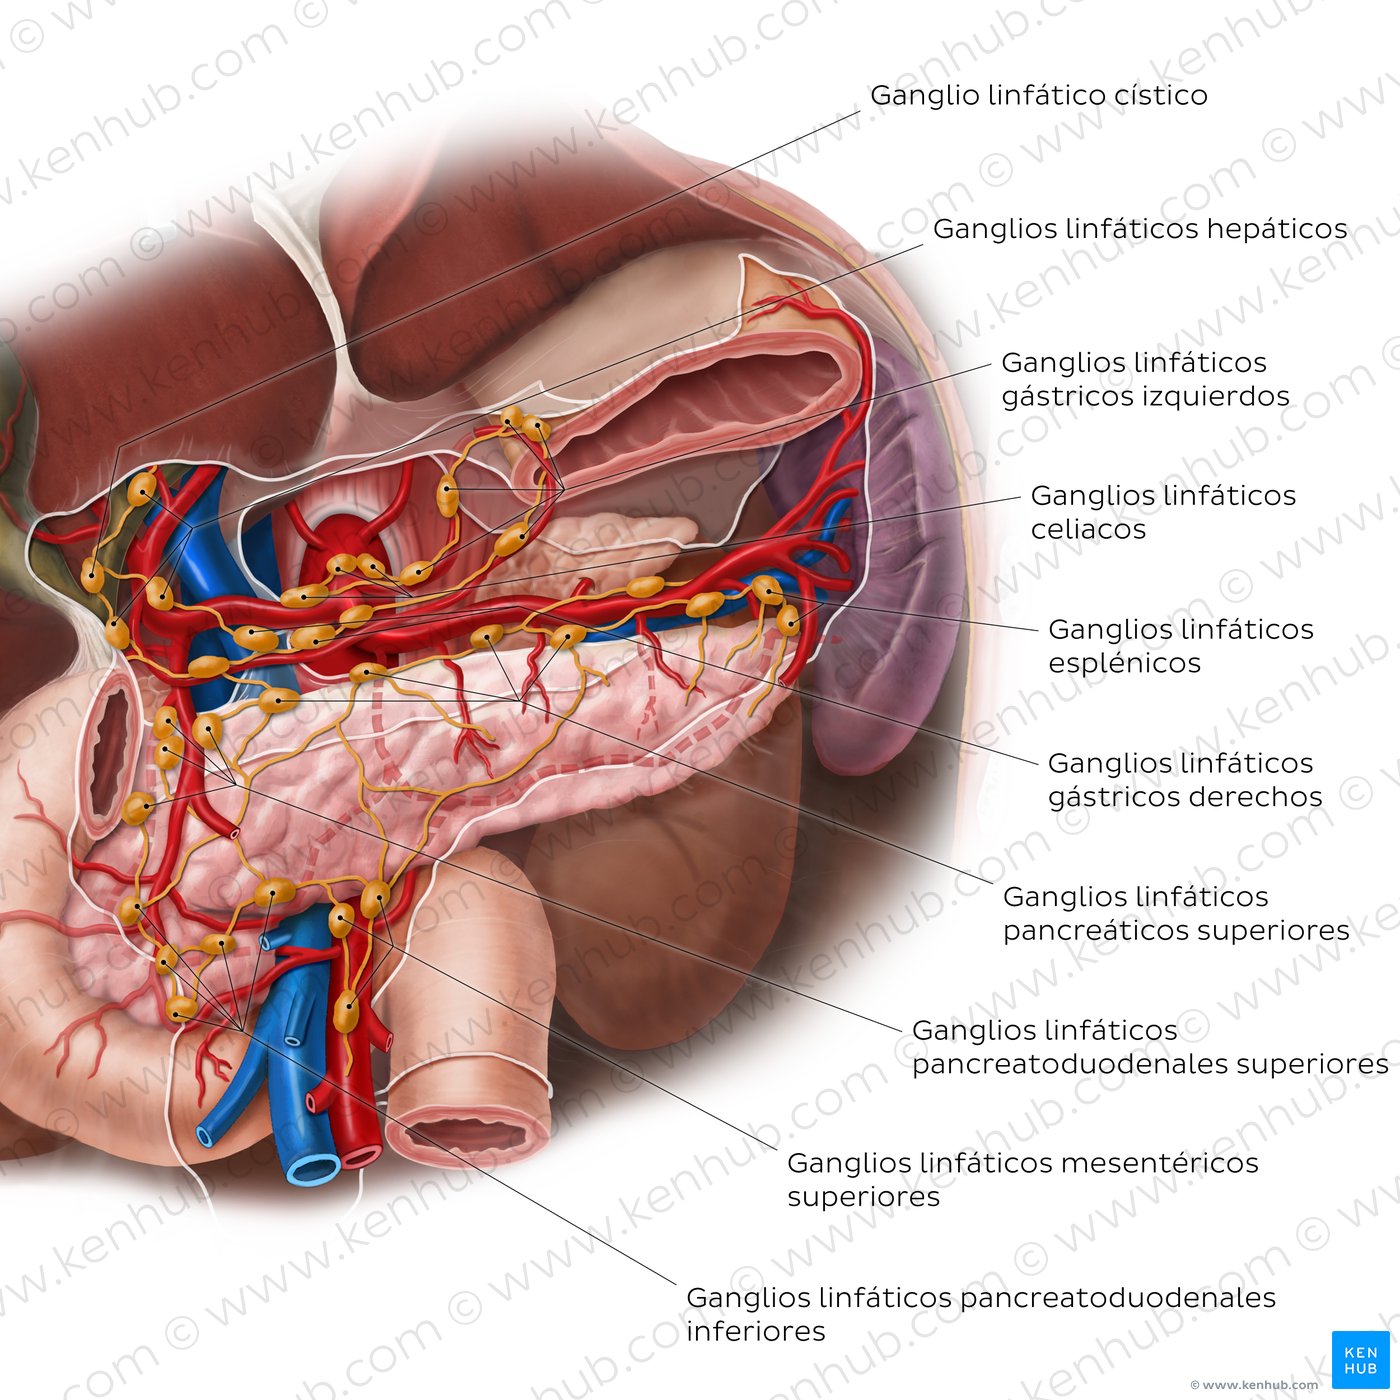 Estructuras linfáticas del páncreas, duodeno y bazo